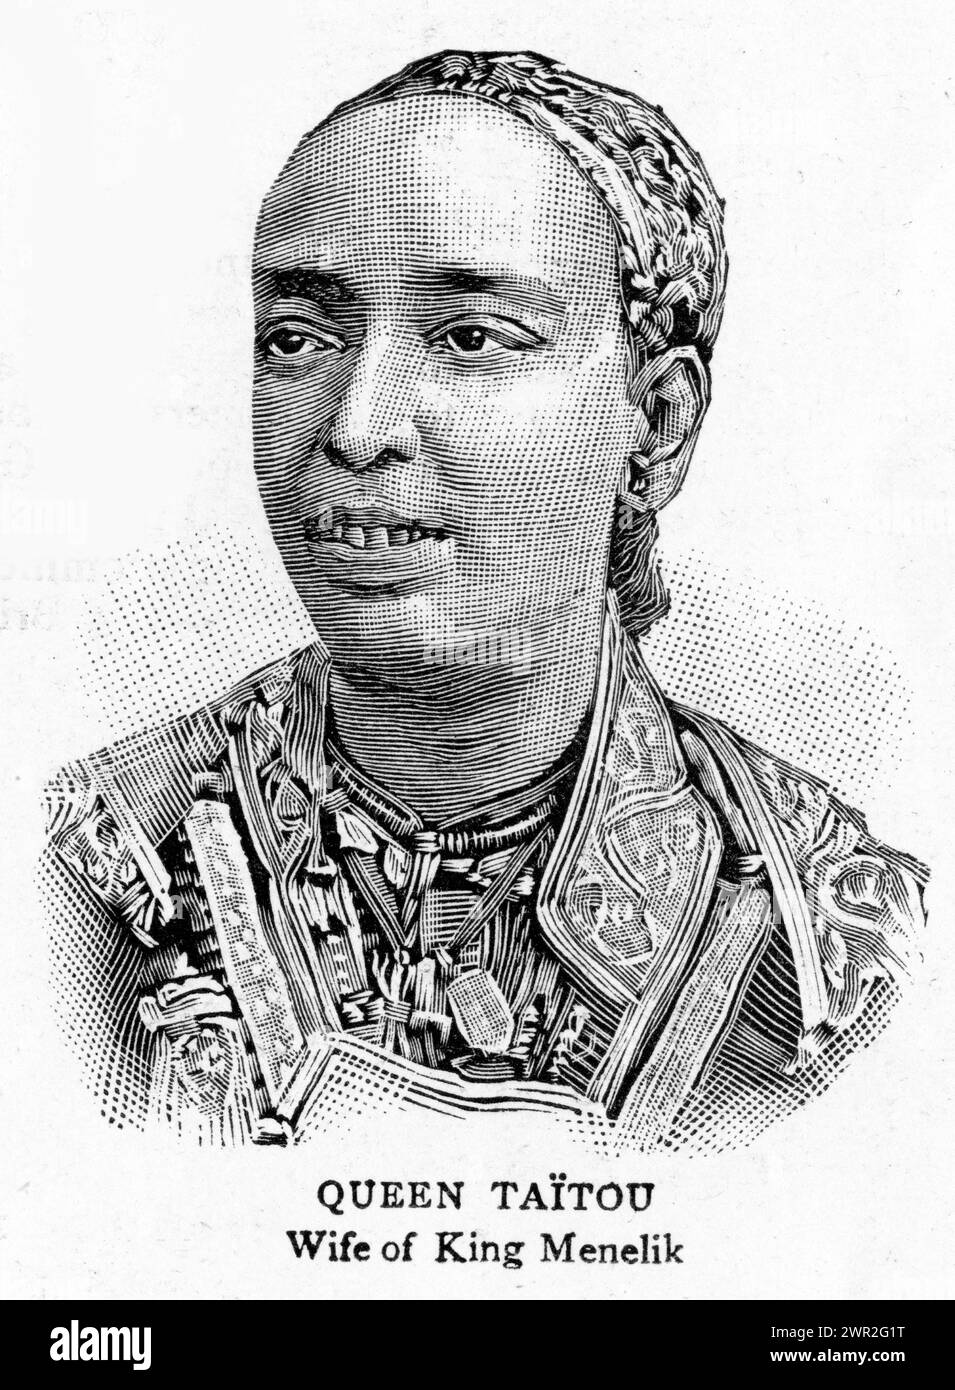 Porträt von Königin Taitou, Ehefrau von König Menelik II. Von Abessinien, sieger der Schlacht von Adwa. Veröffentlicht um 1896. Stockfoto